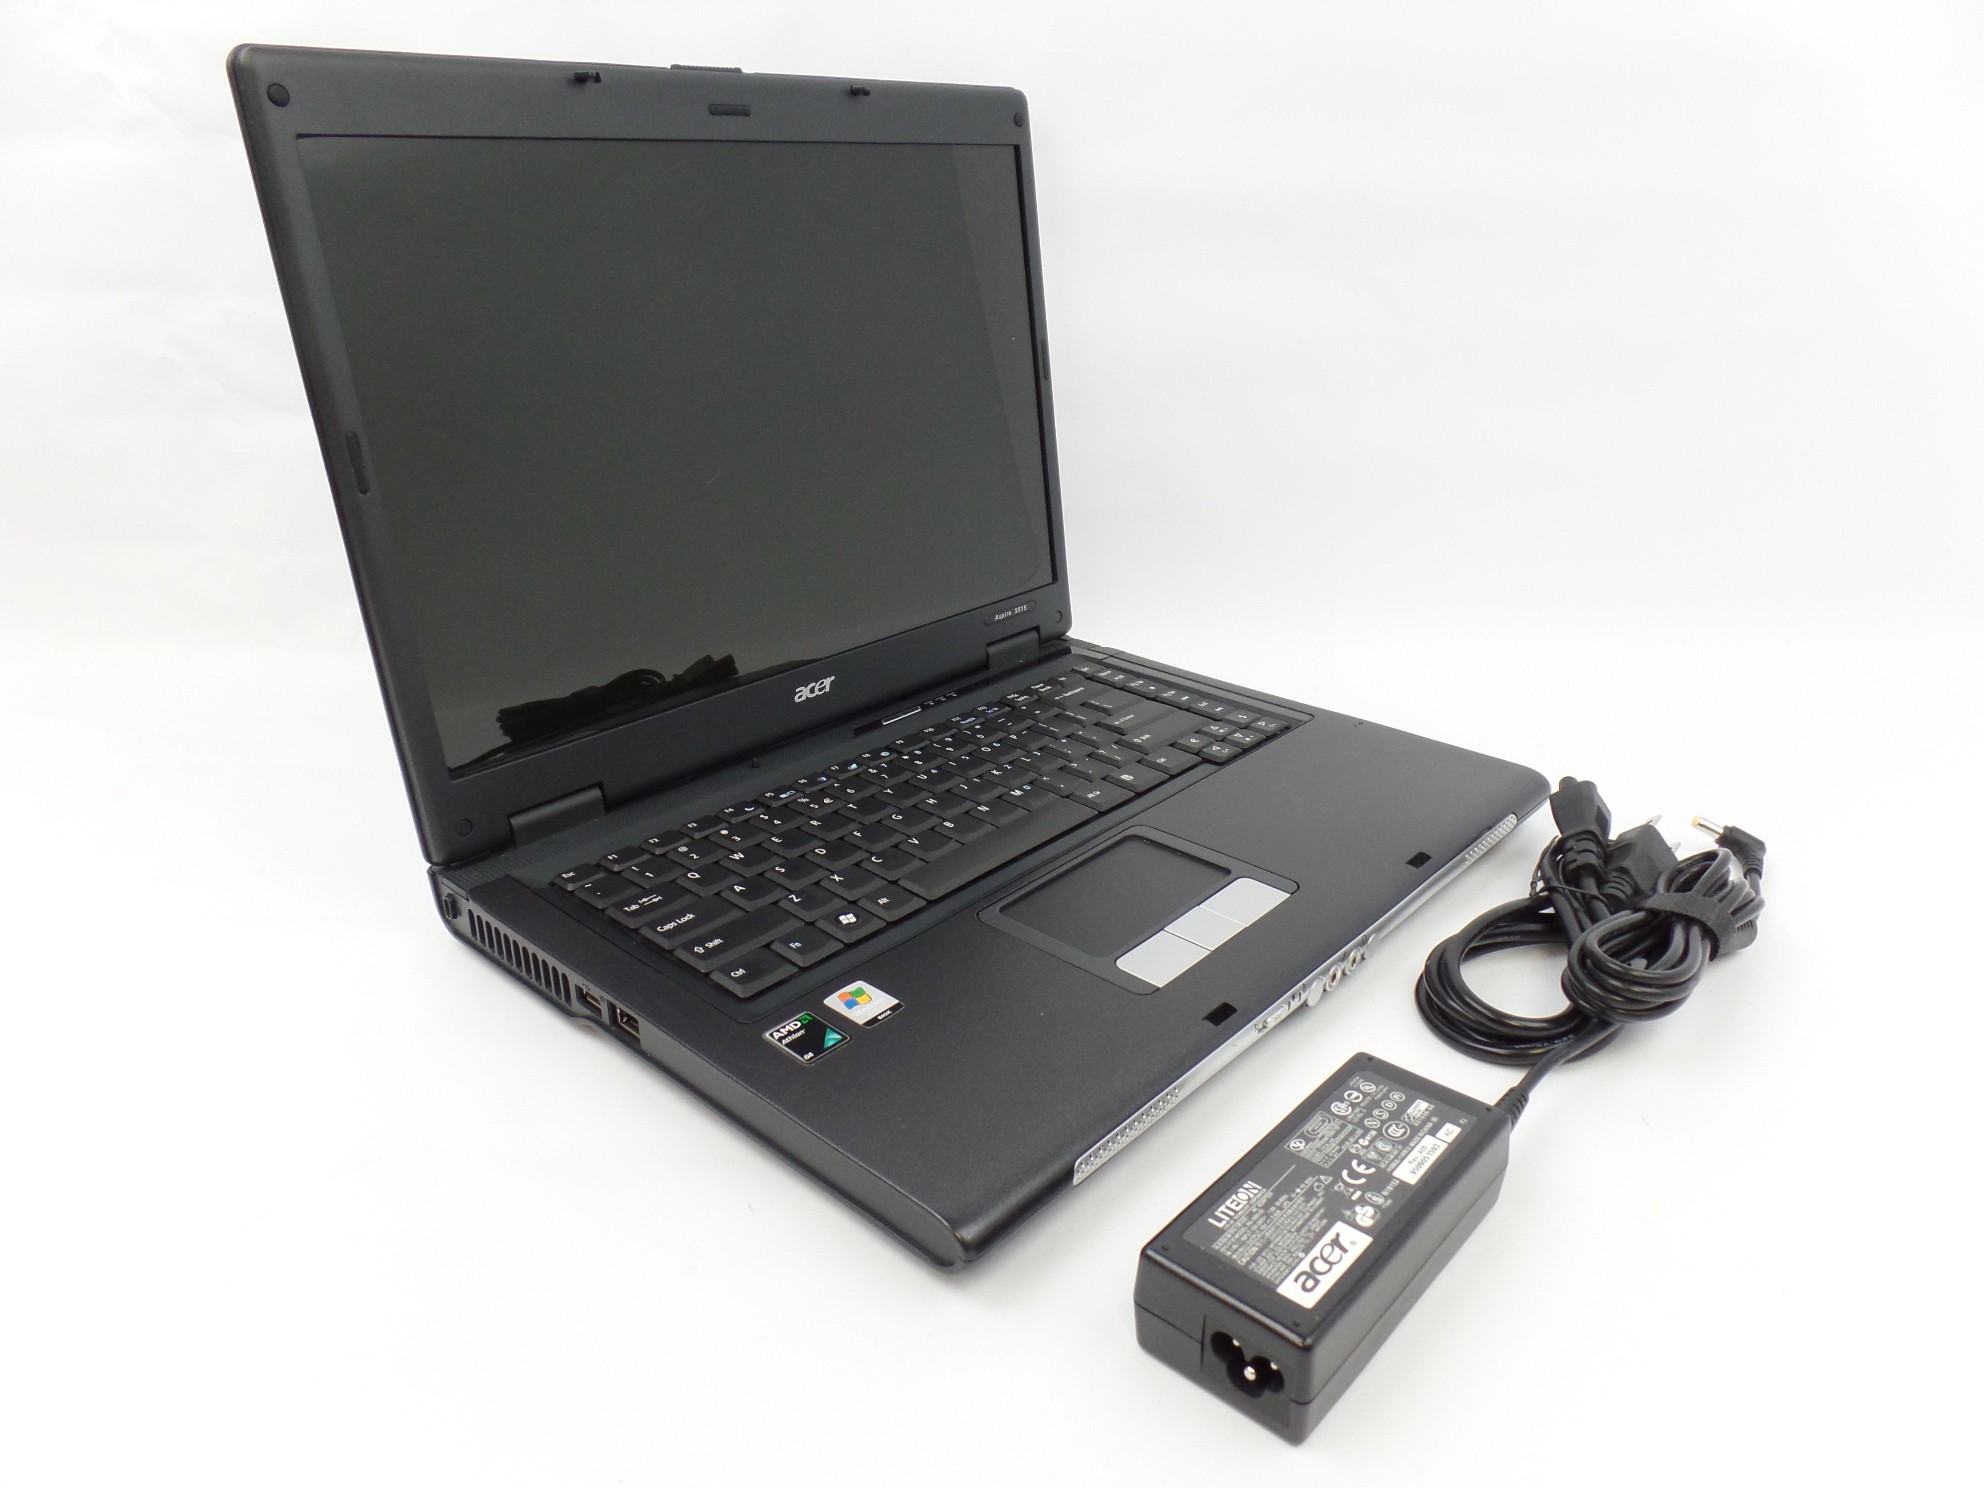 Acer Aspire 5515 15.6" AMD Athlon 2650e 1.6GHz 3GB 160B W7P No WebCam Laptop